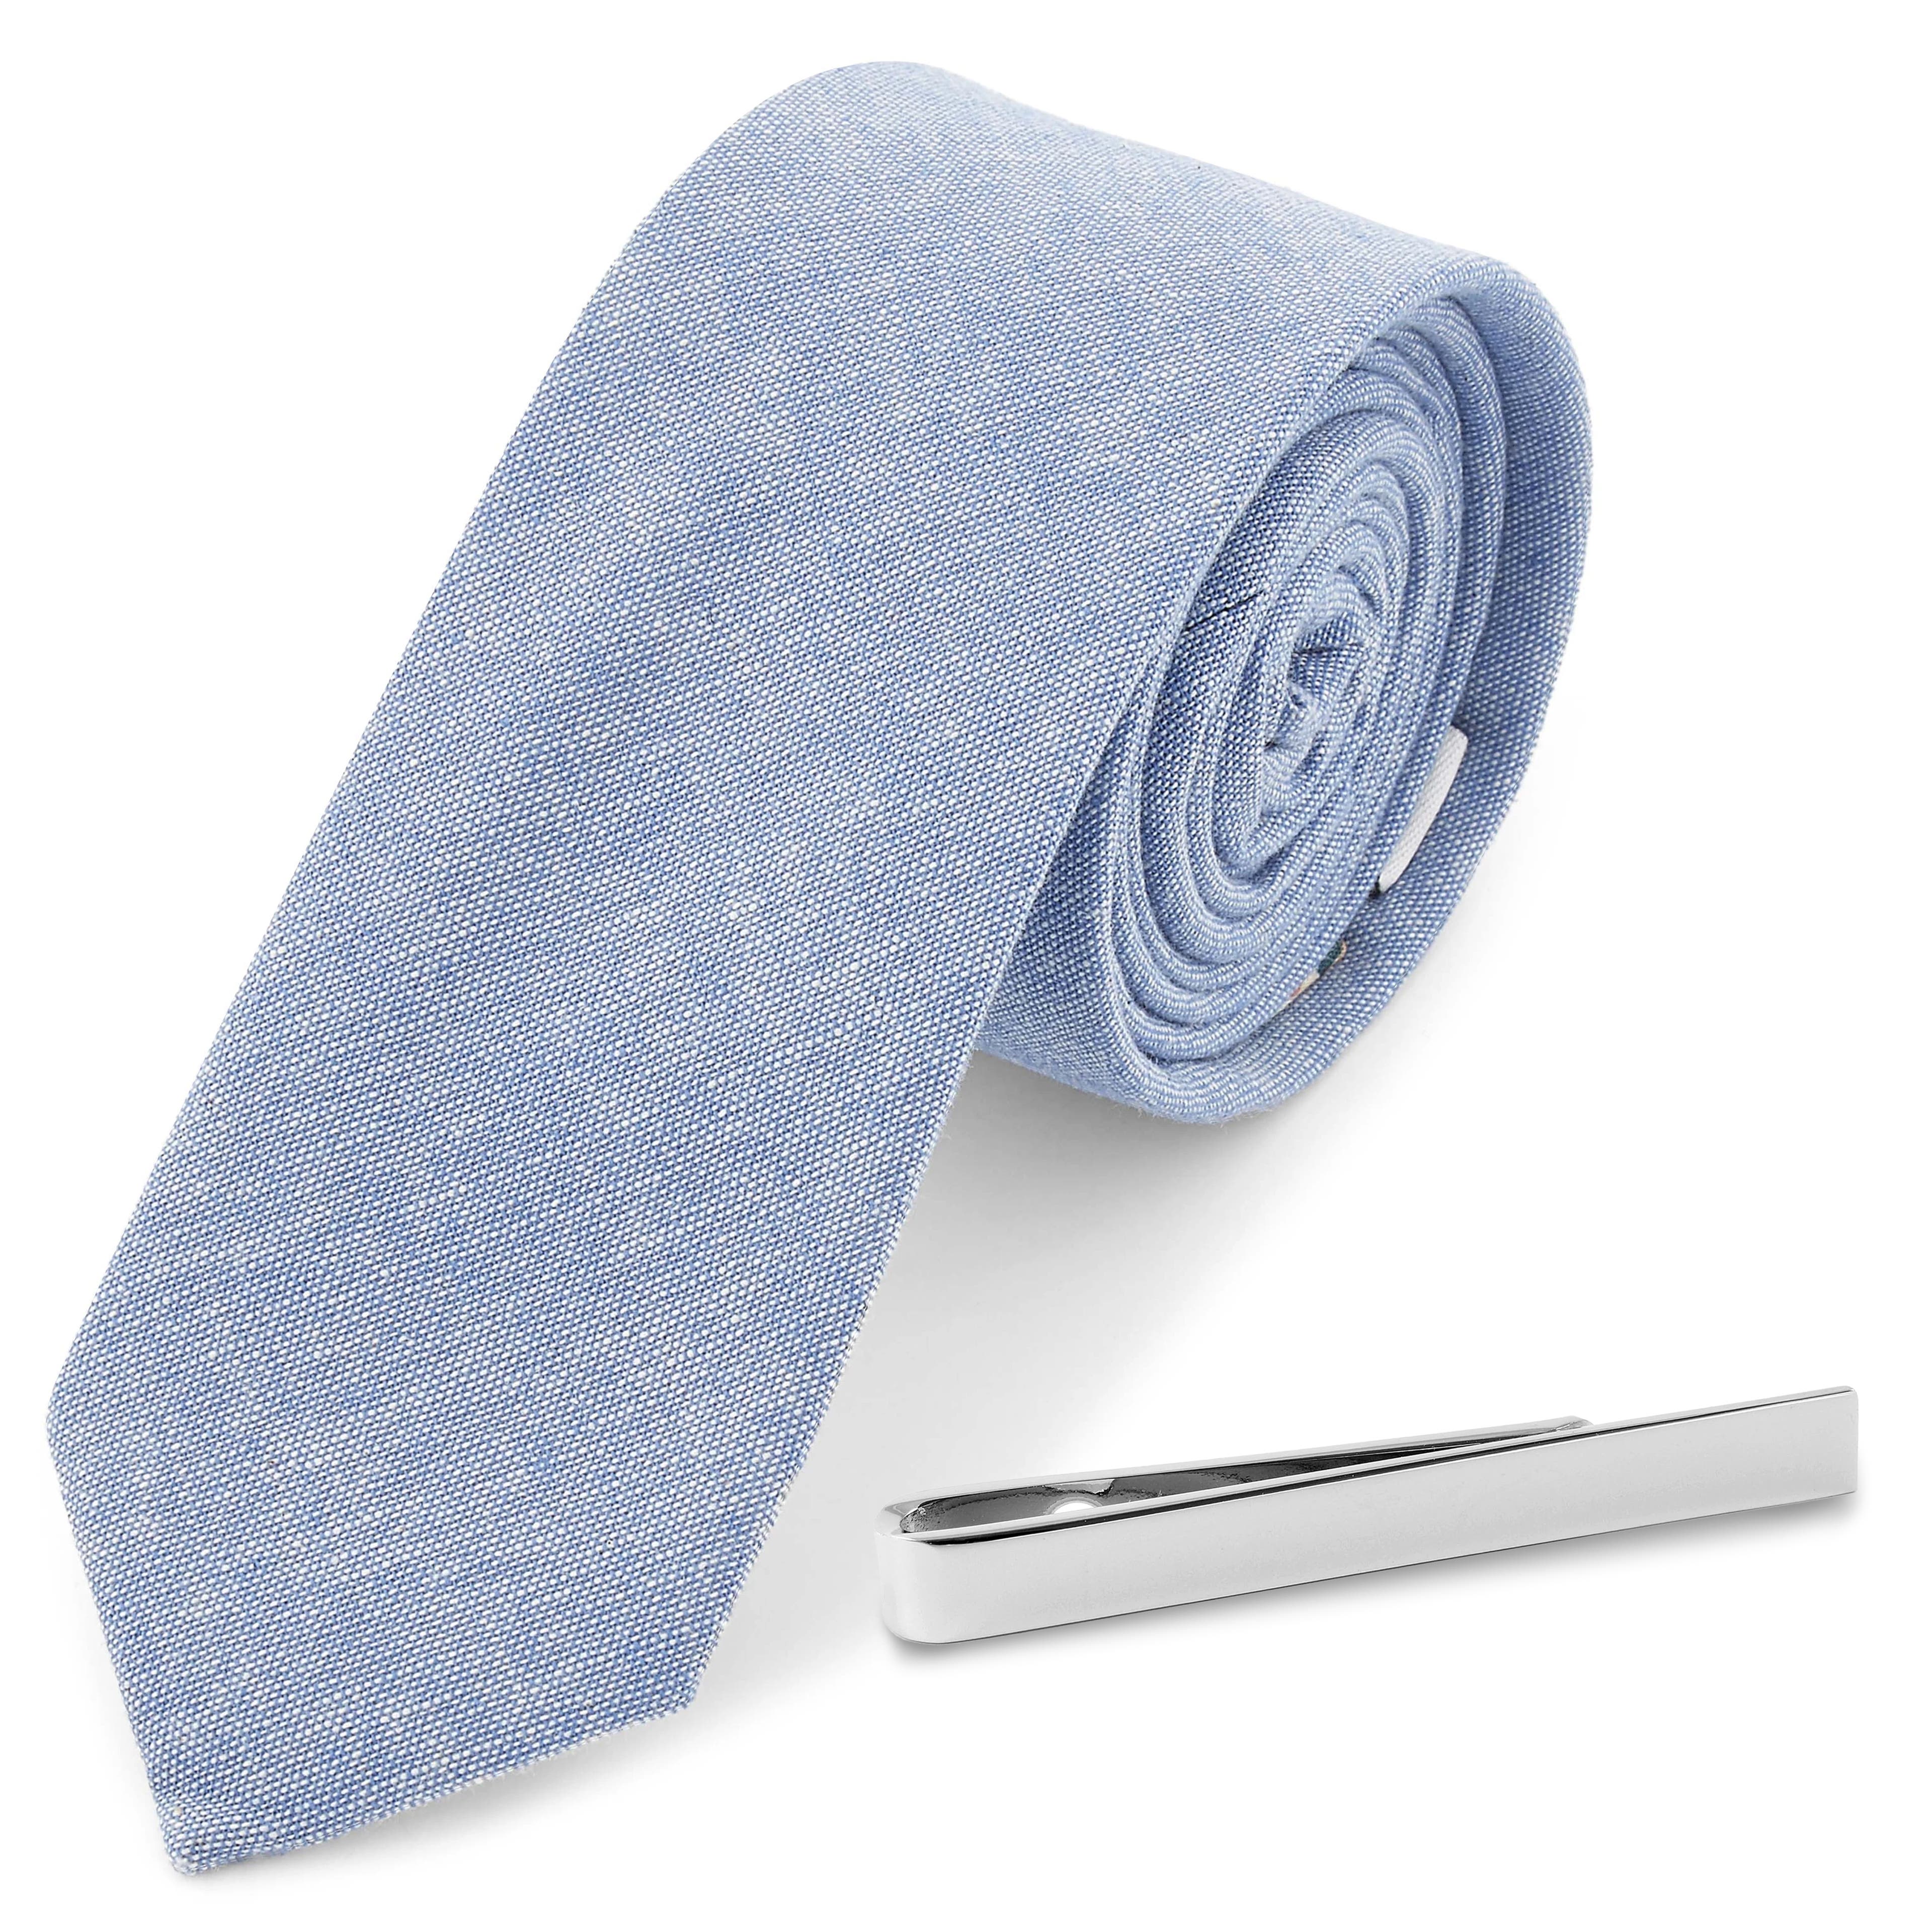 Sada bledomodrej kravaty a kravatovej spony v striebornej farbe